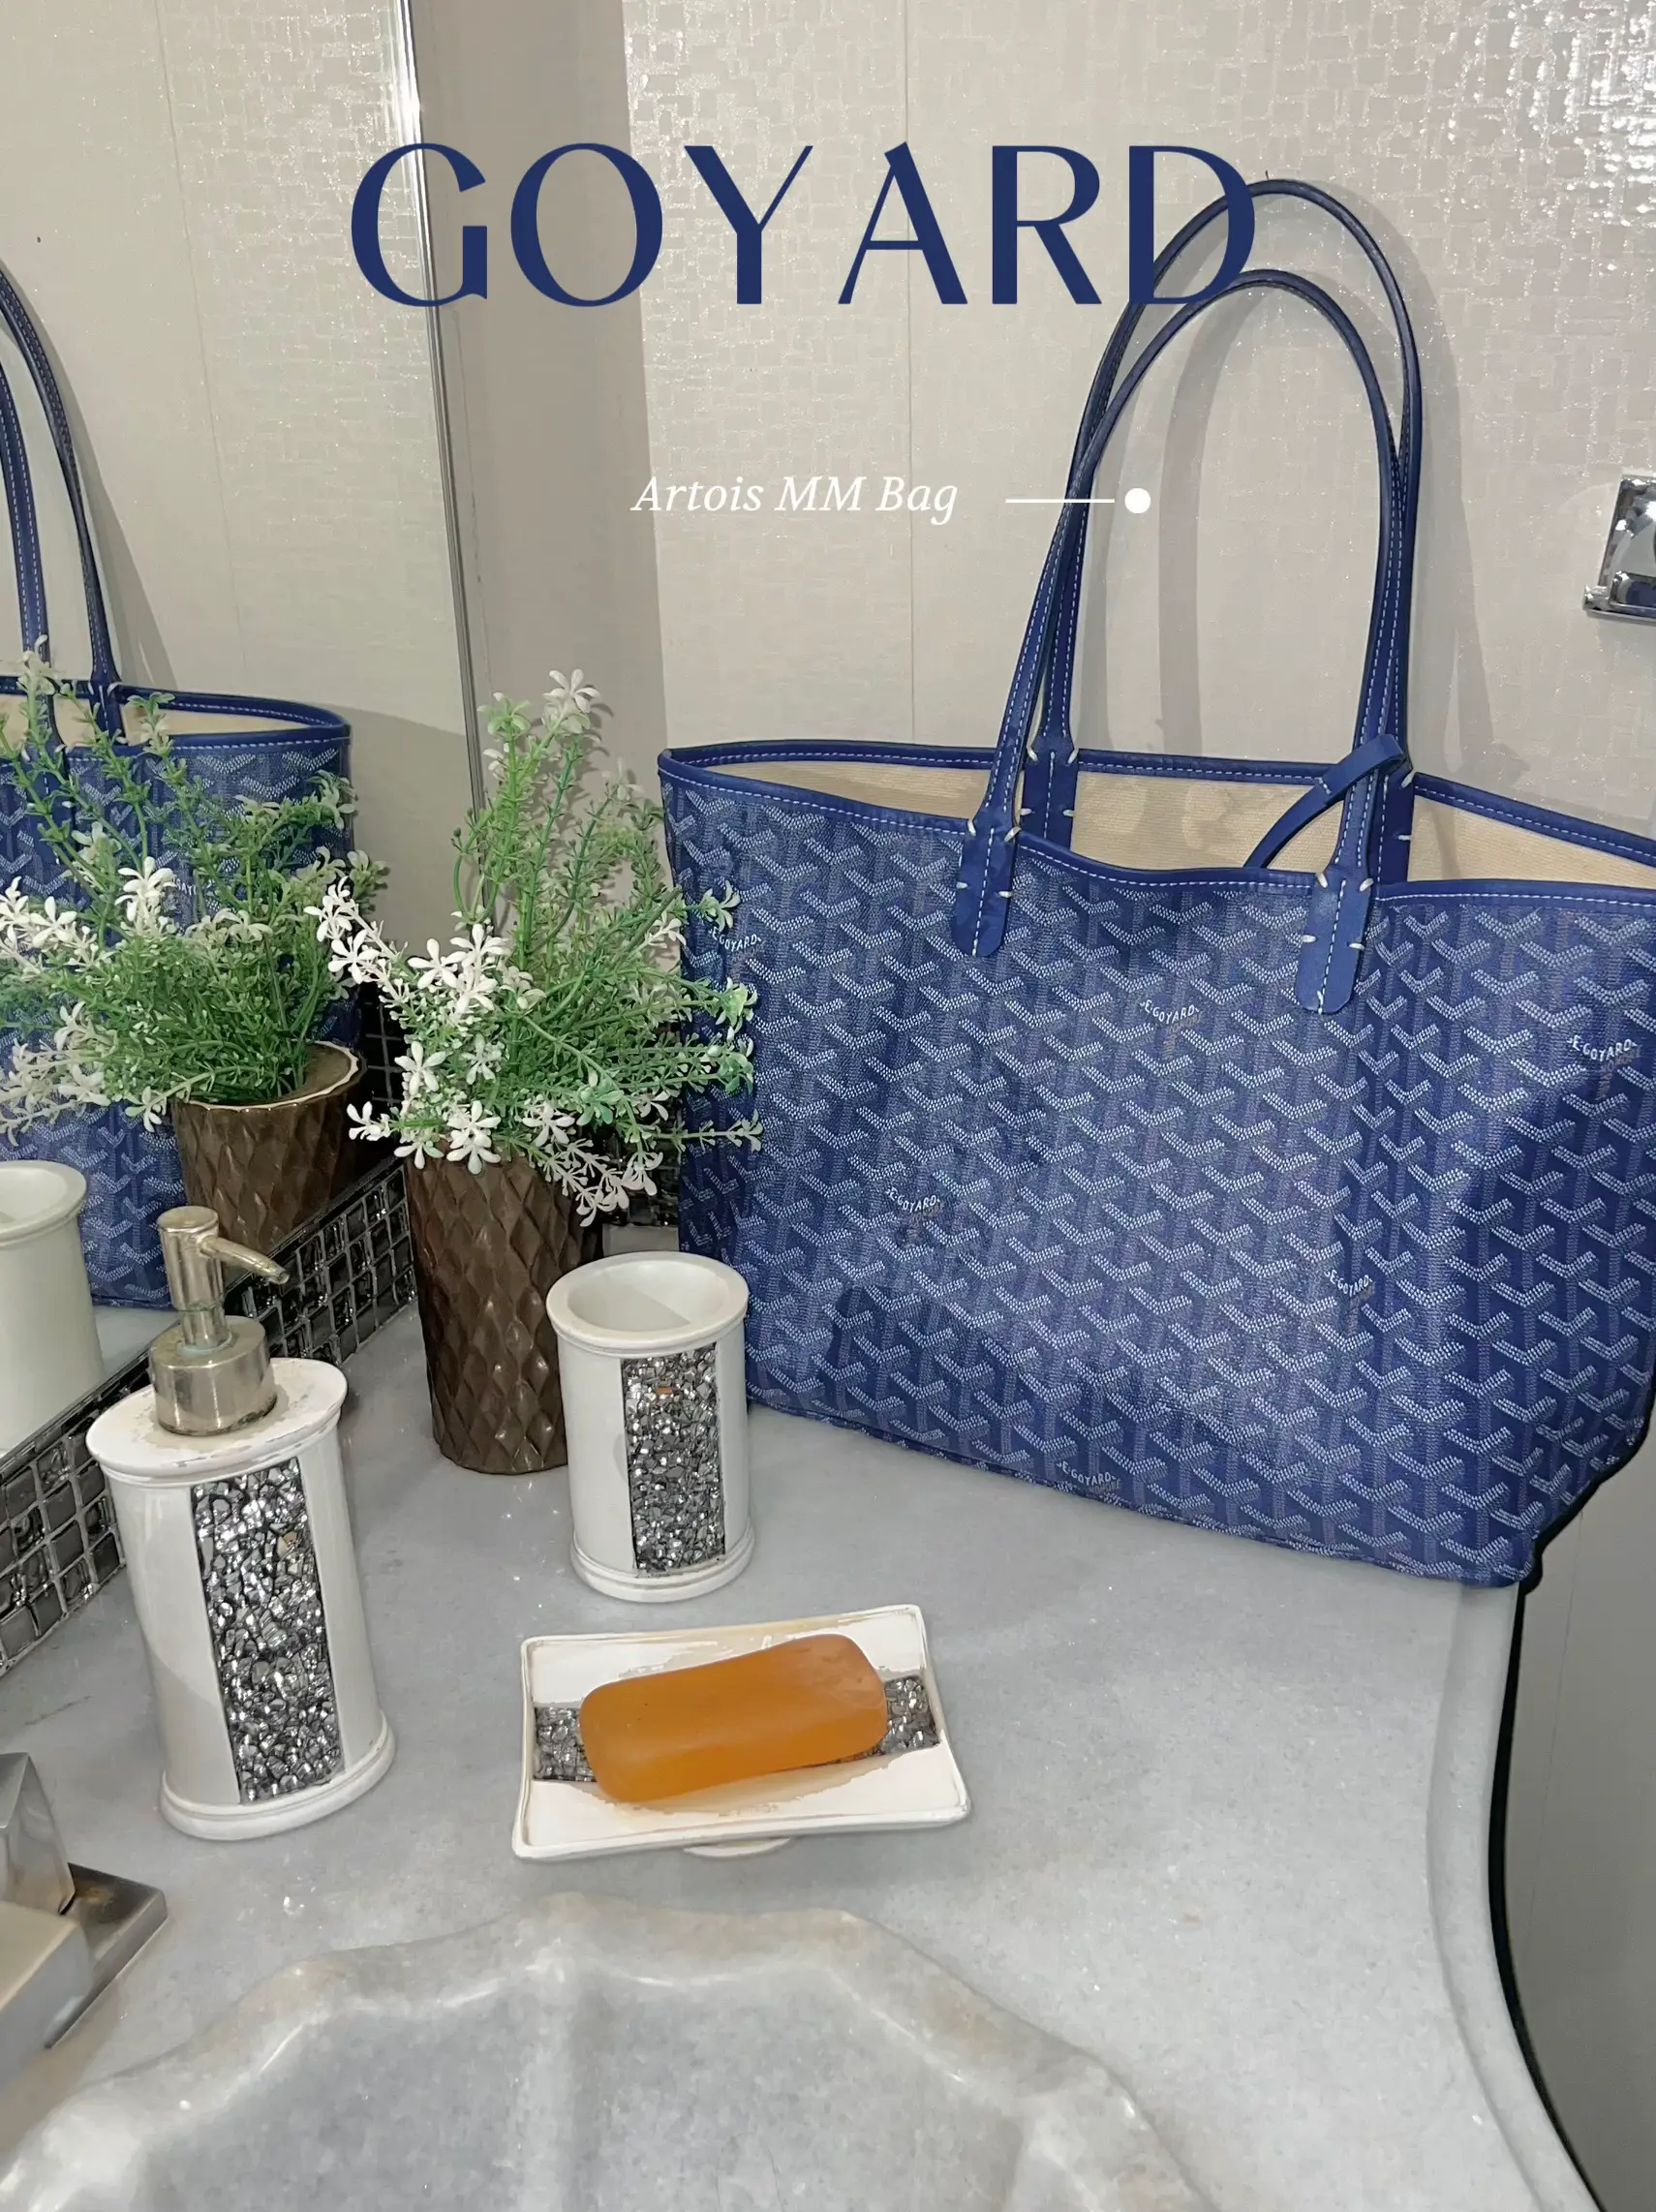 GOYARD SAINT LOUIS PM BAG REVIEW: Under $2K Designer Bag (Saint Louis GM,  Artois PM)